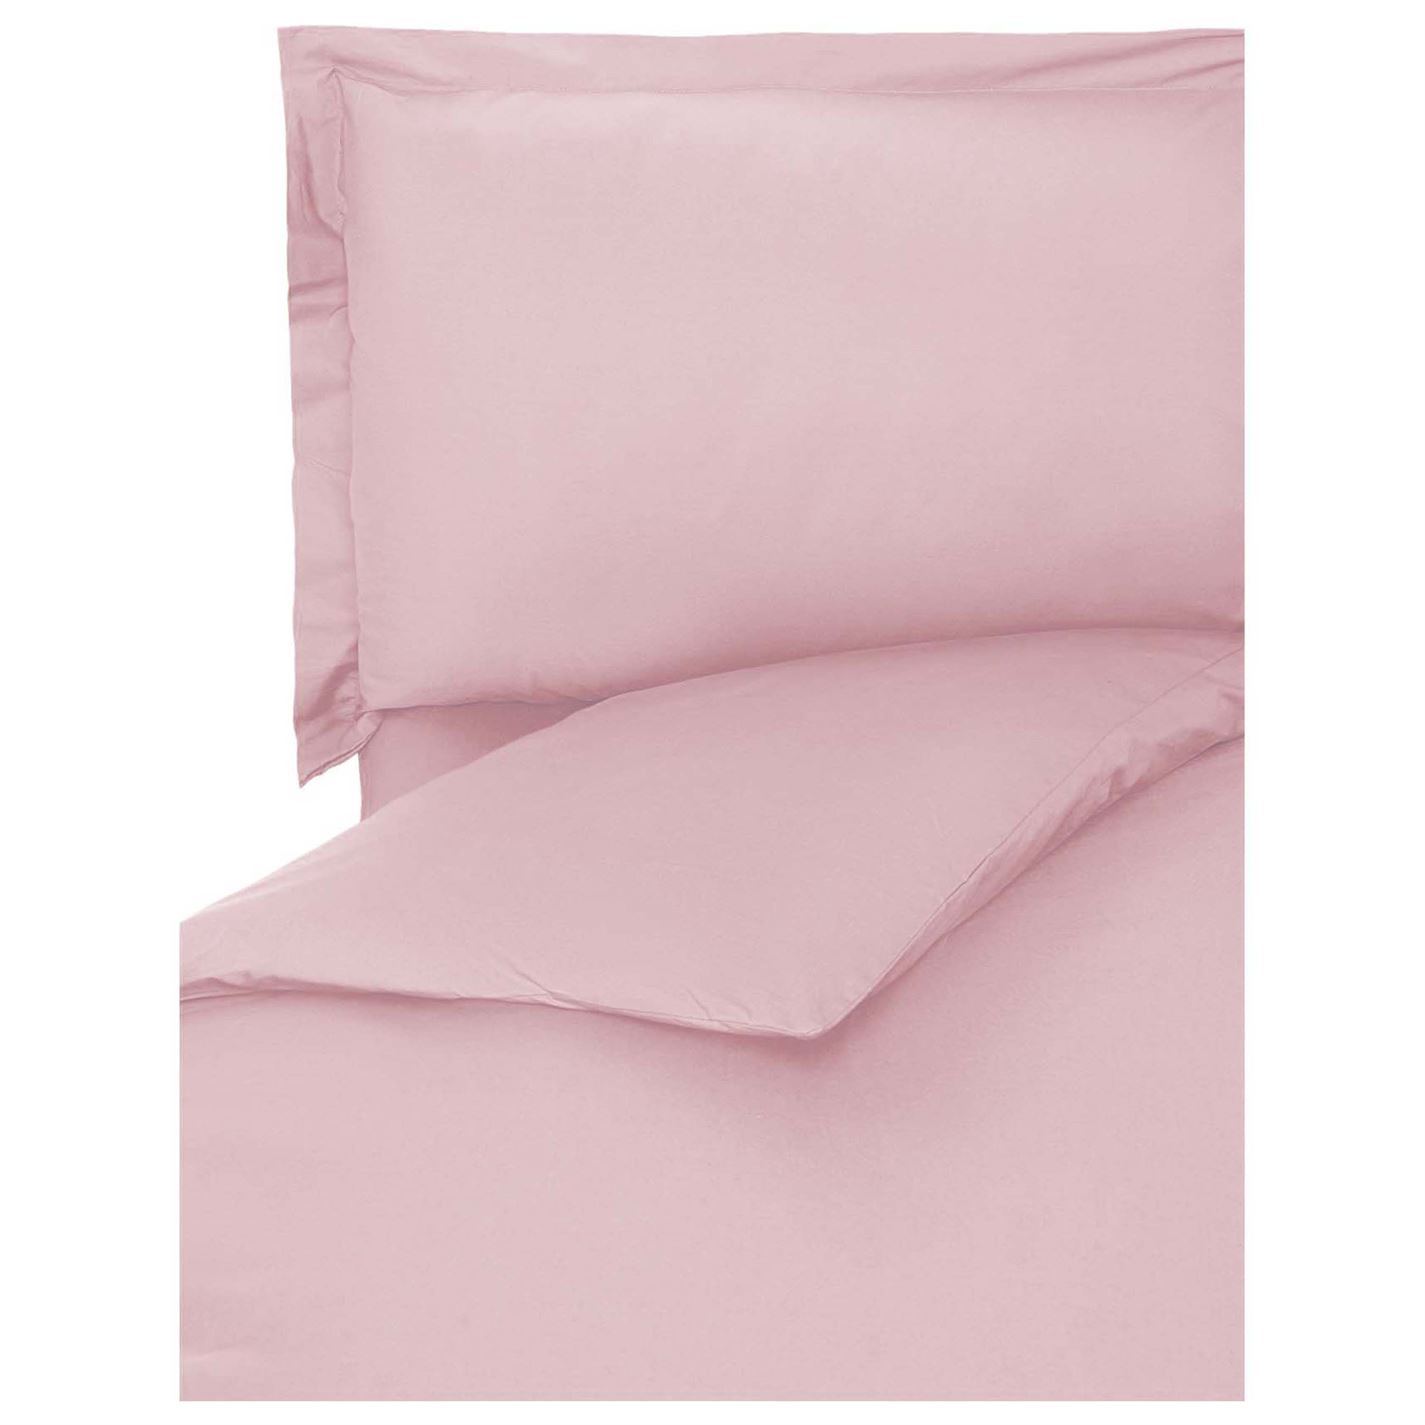 Linea Egyptian bumbac Oxford Pillowcase roz